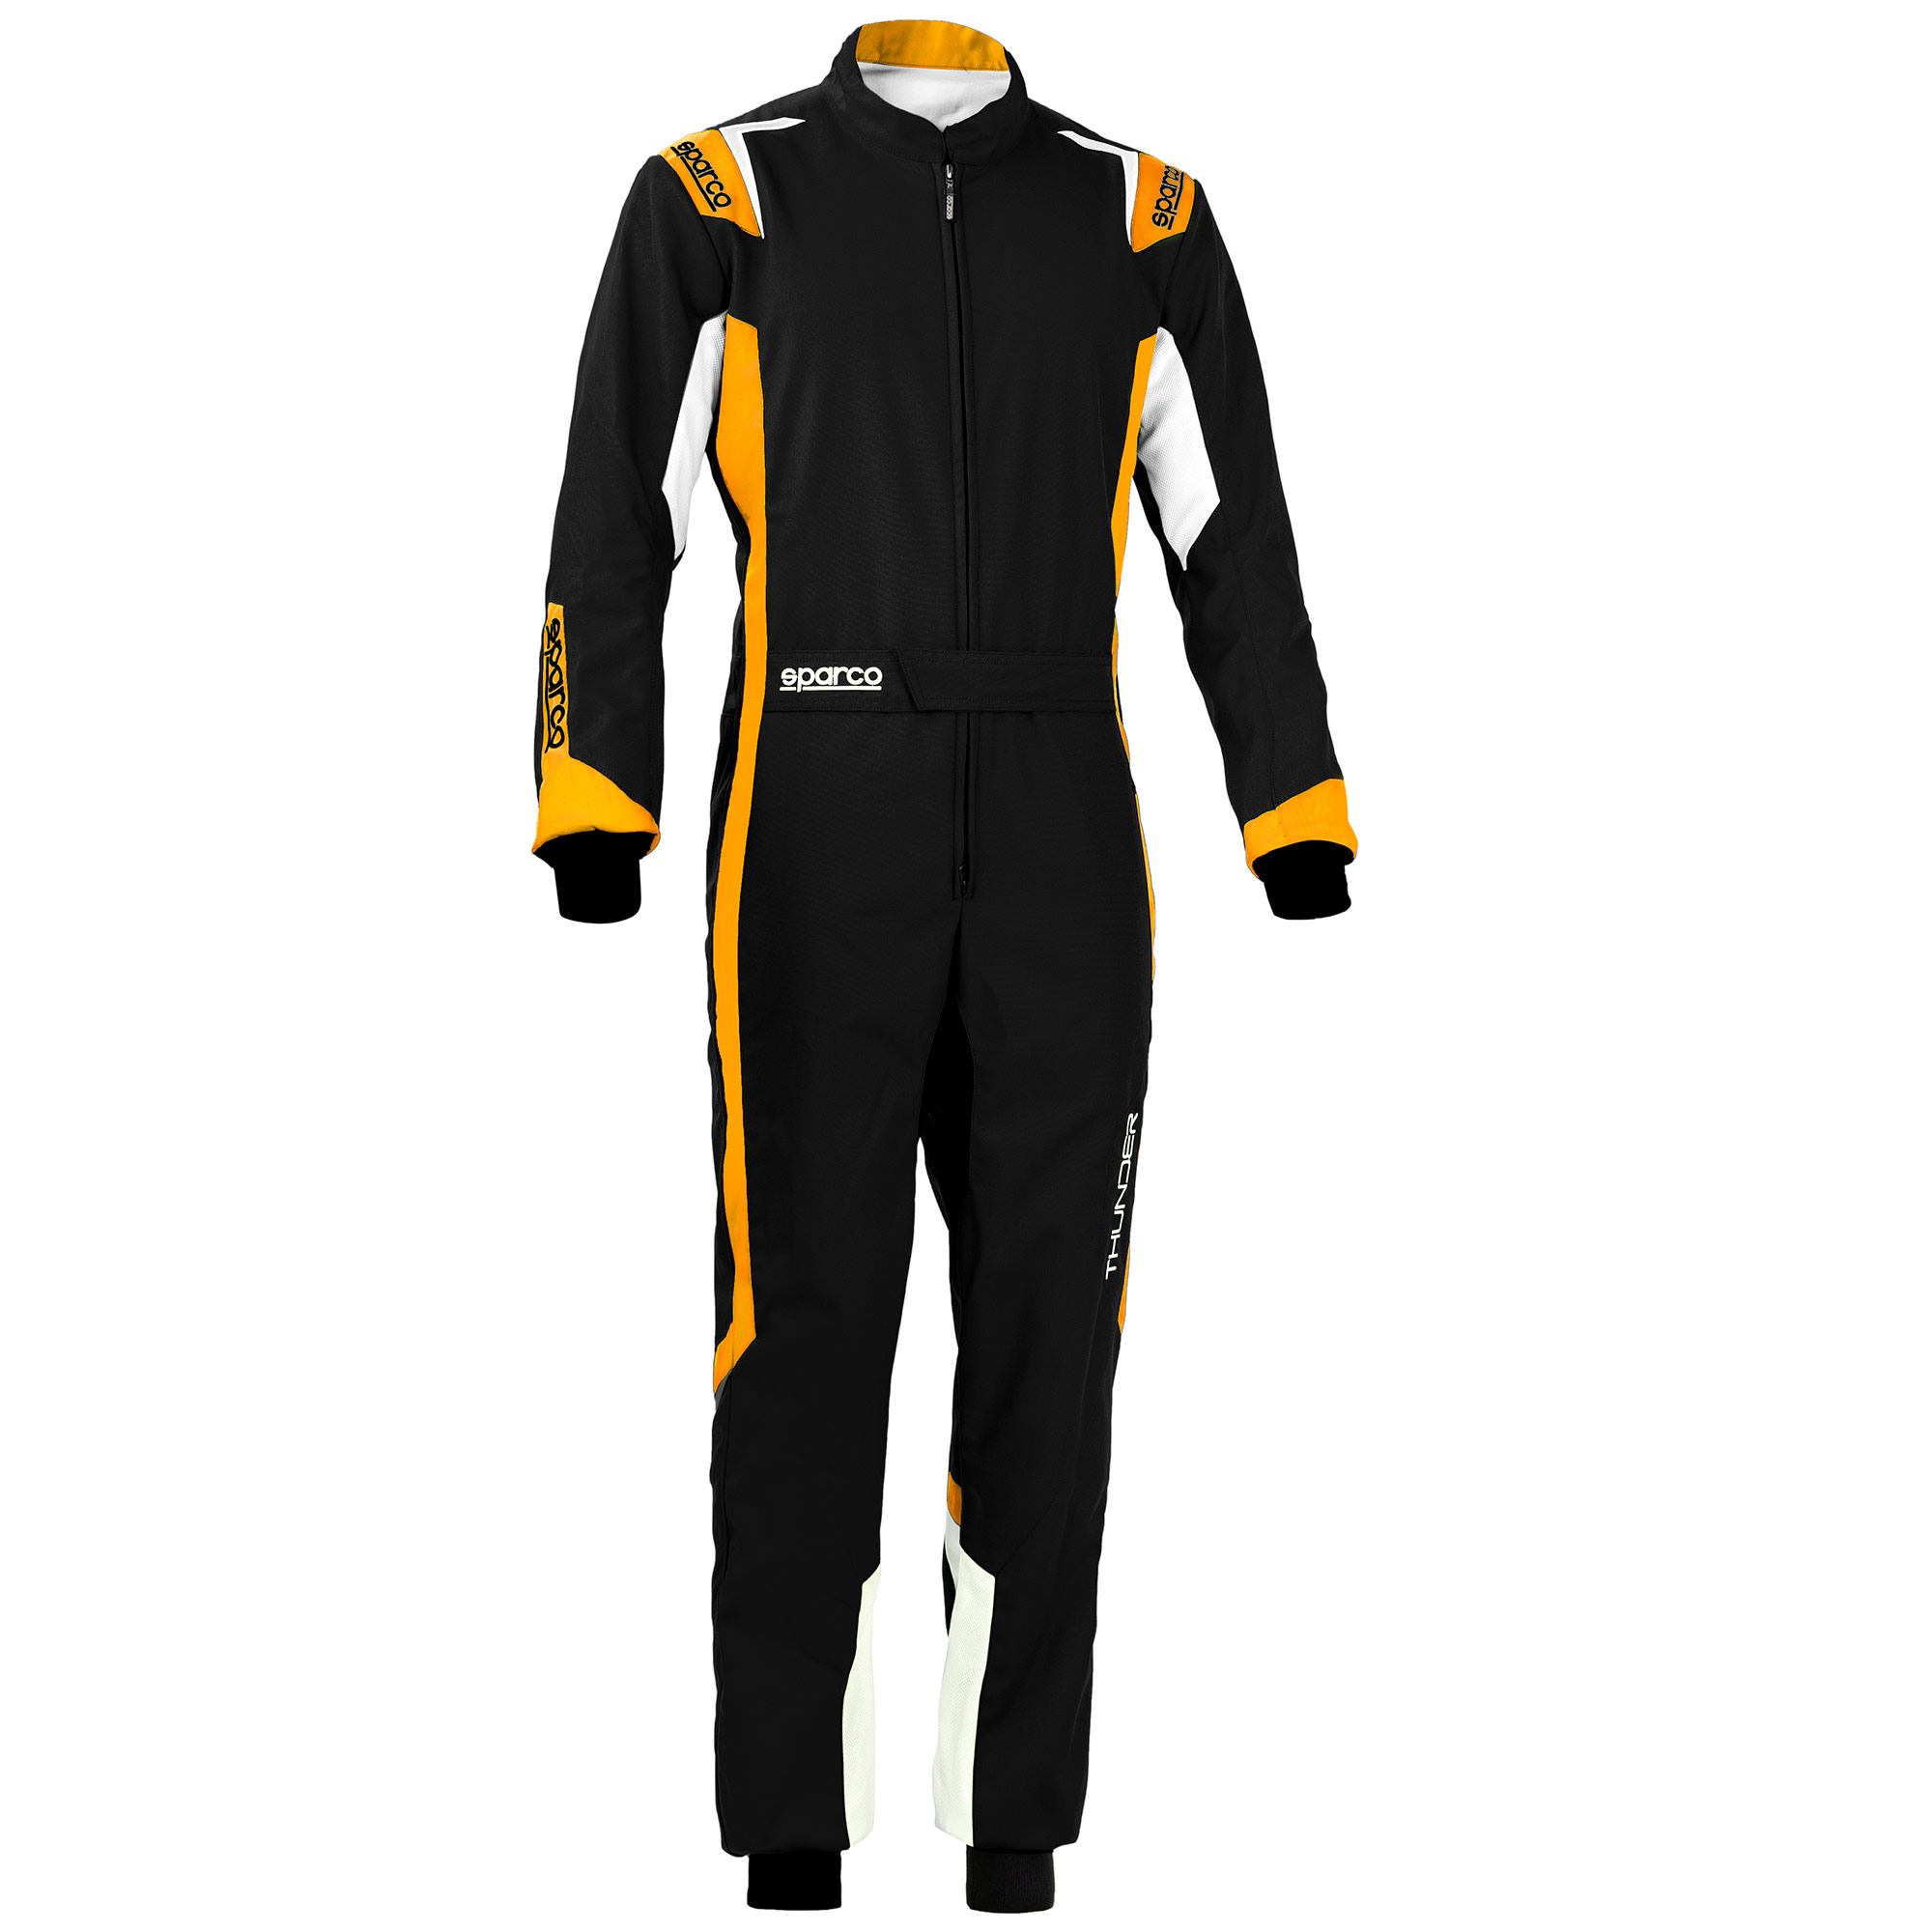 Details about   2021 Martini Racing Suit Go Kart Race Suit Karting Suit Motorsports Team Suit 